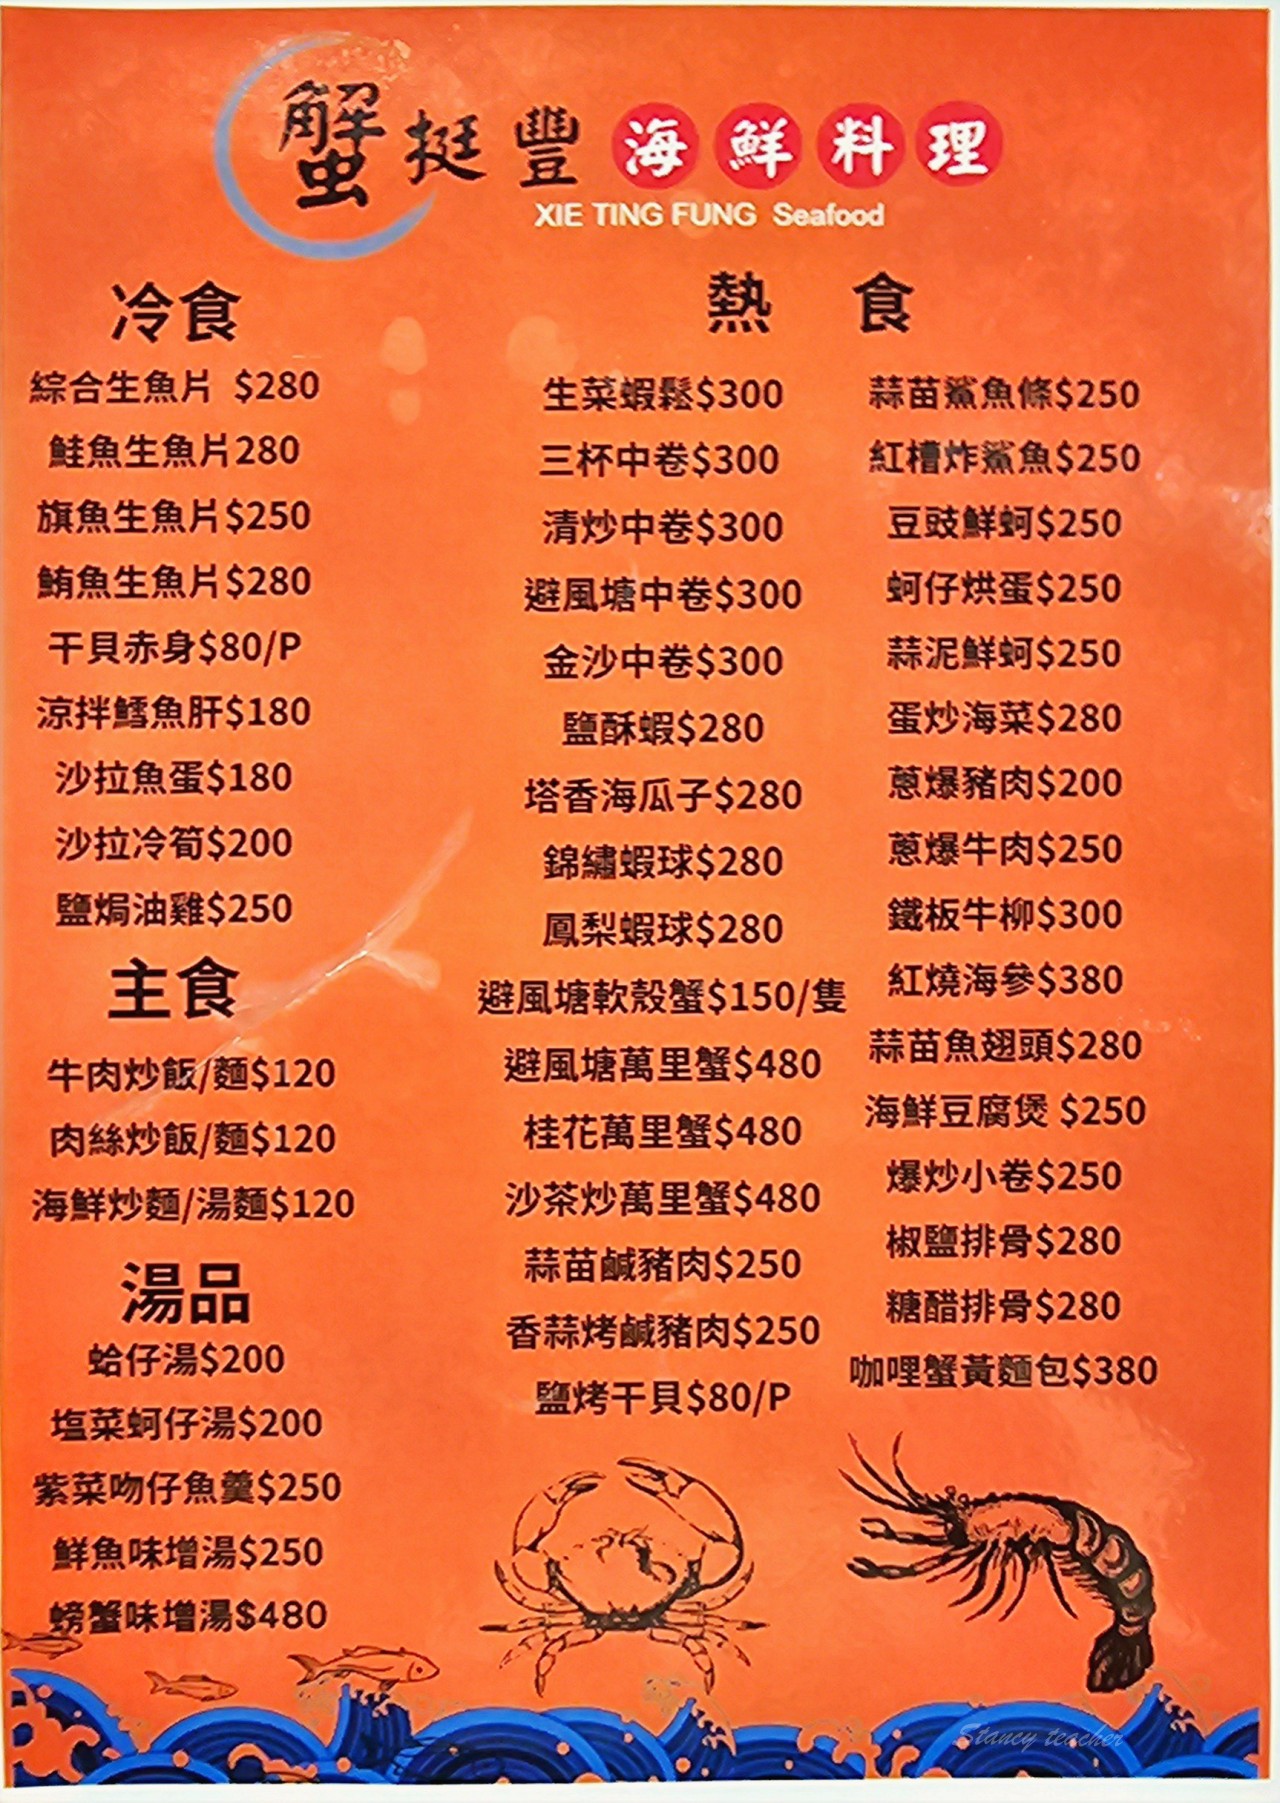 中山區海鮮熱炒店「蟹挺豐海鮮料理」自家漁船捕撈尚青海鮮合菜一桌6600每人都有龍蝦吃